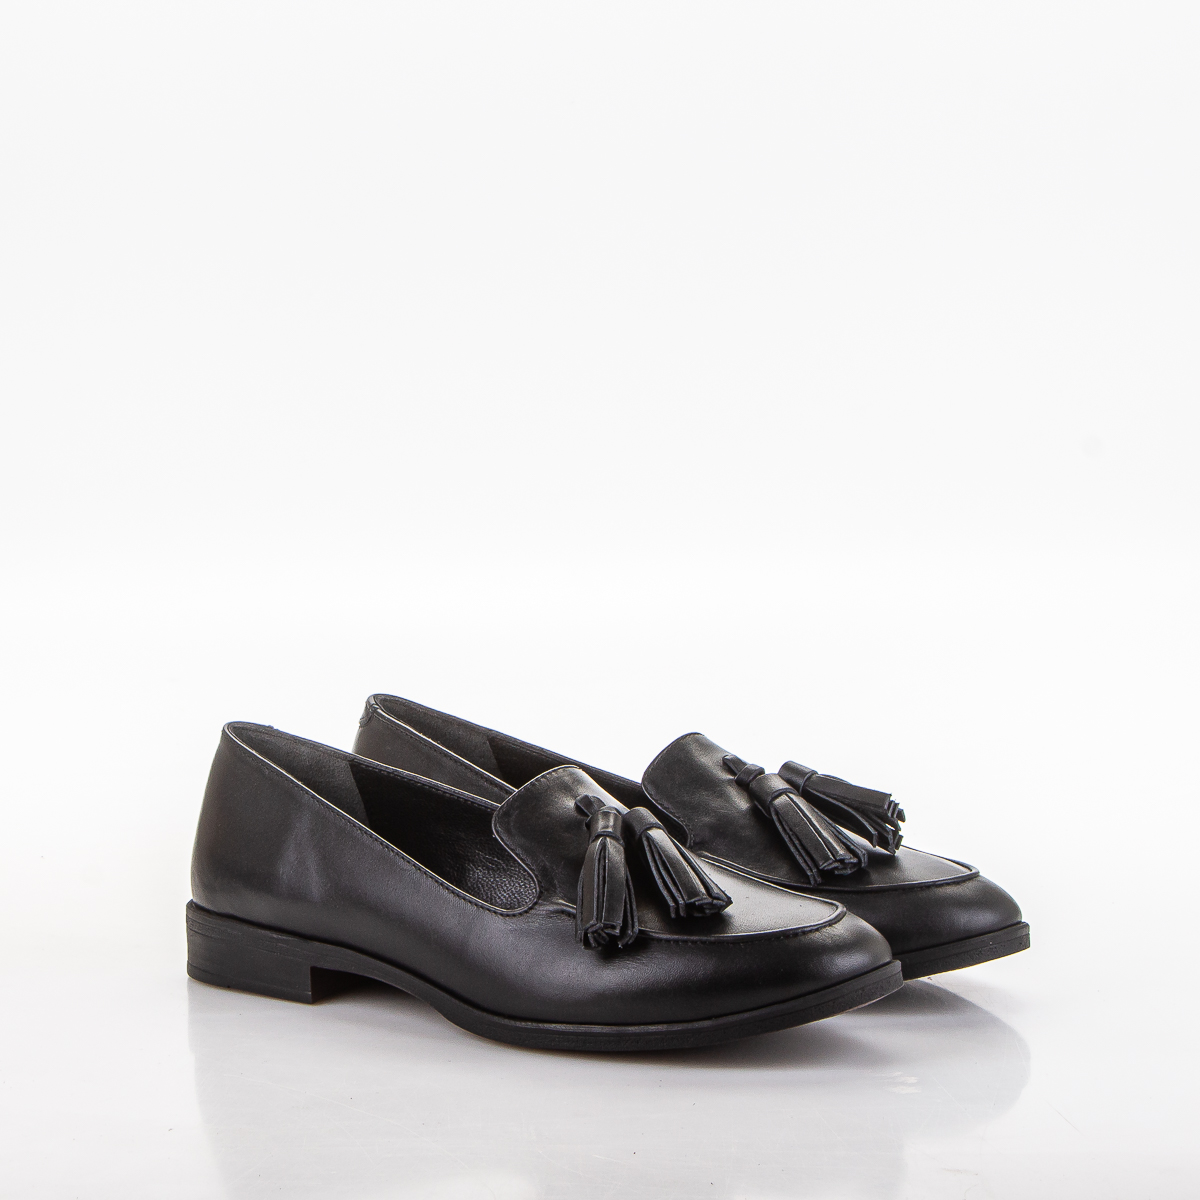 Фото Лоферы женские 174.1948 black купить на lauf.shoes